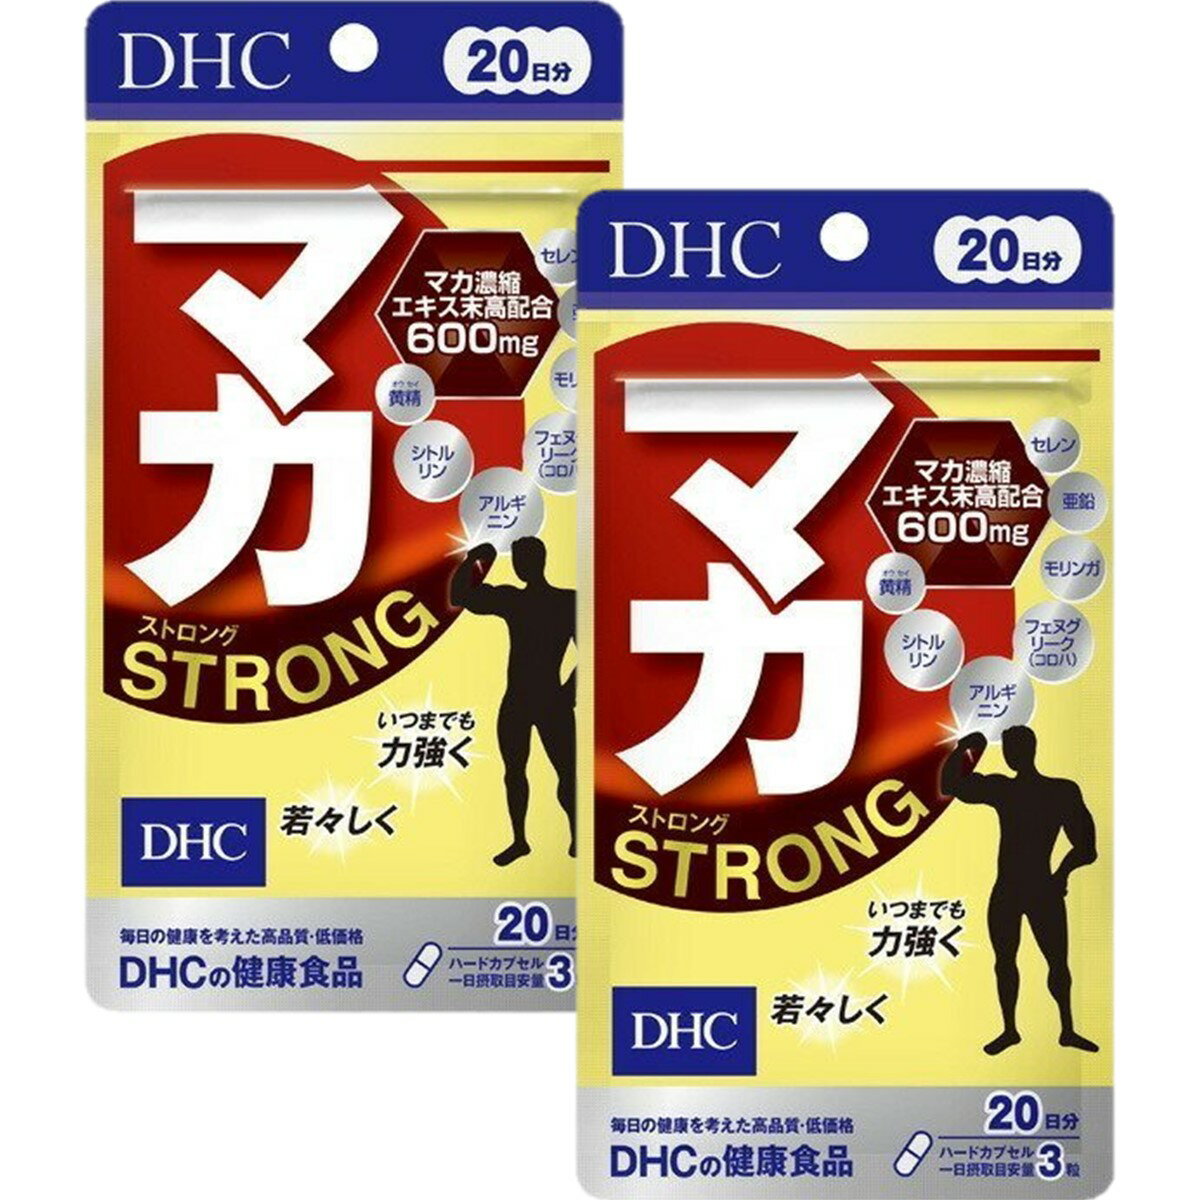 【DHC】マカ ストロング 20日分 60粒×2個セット